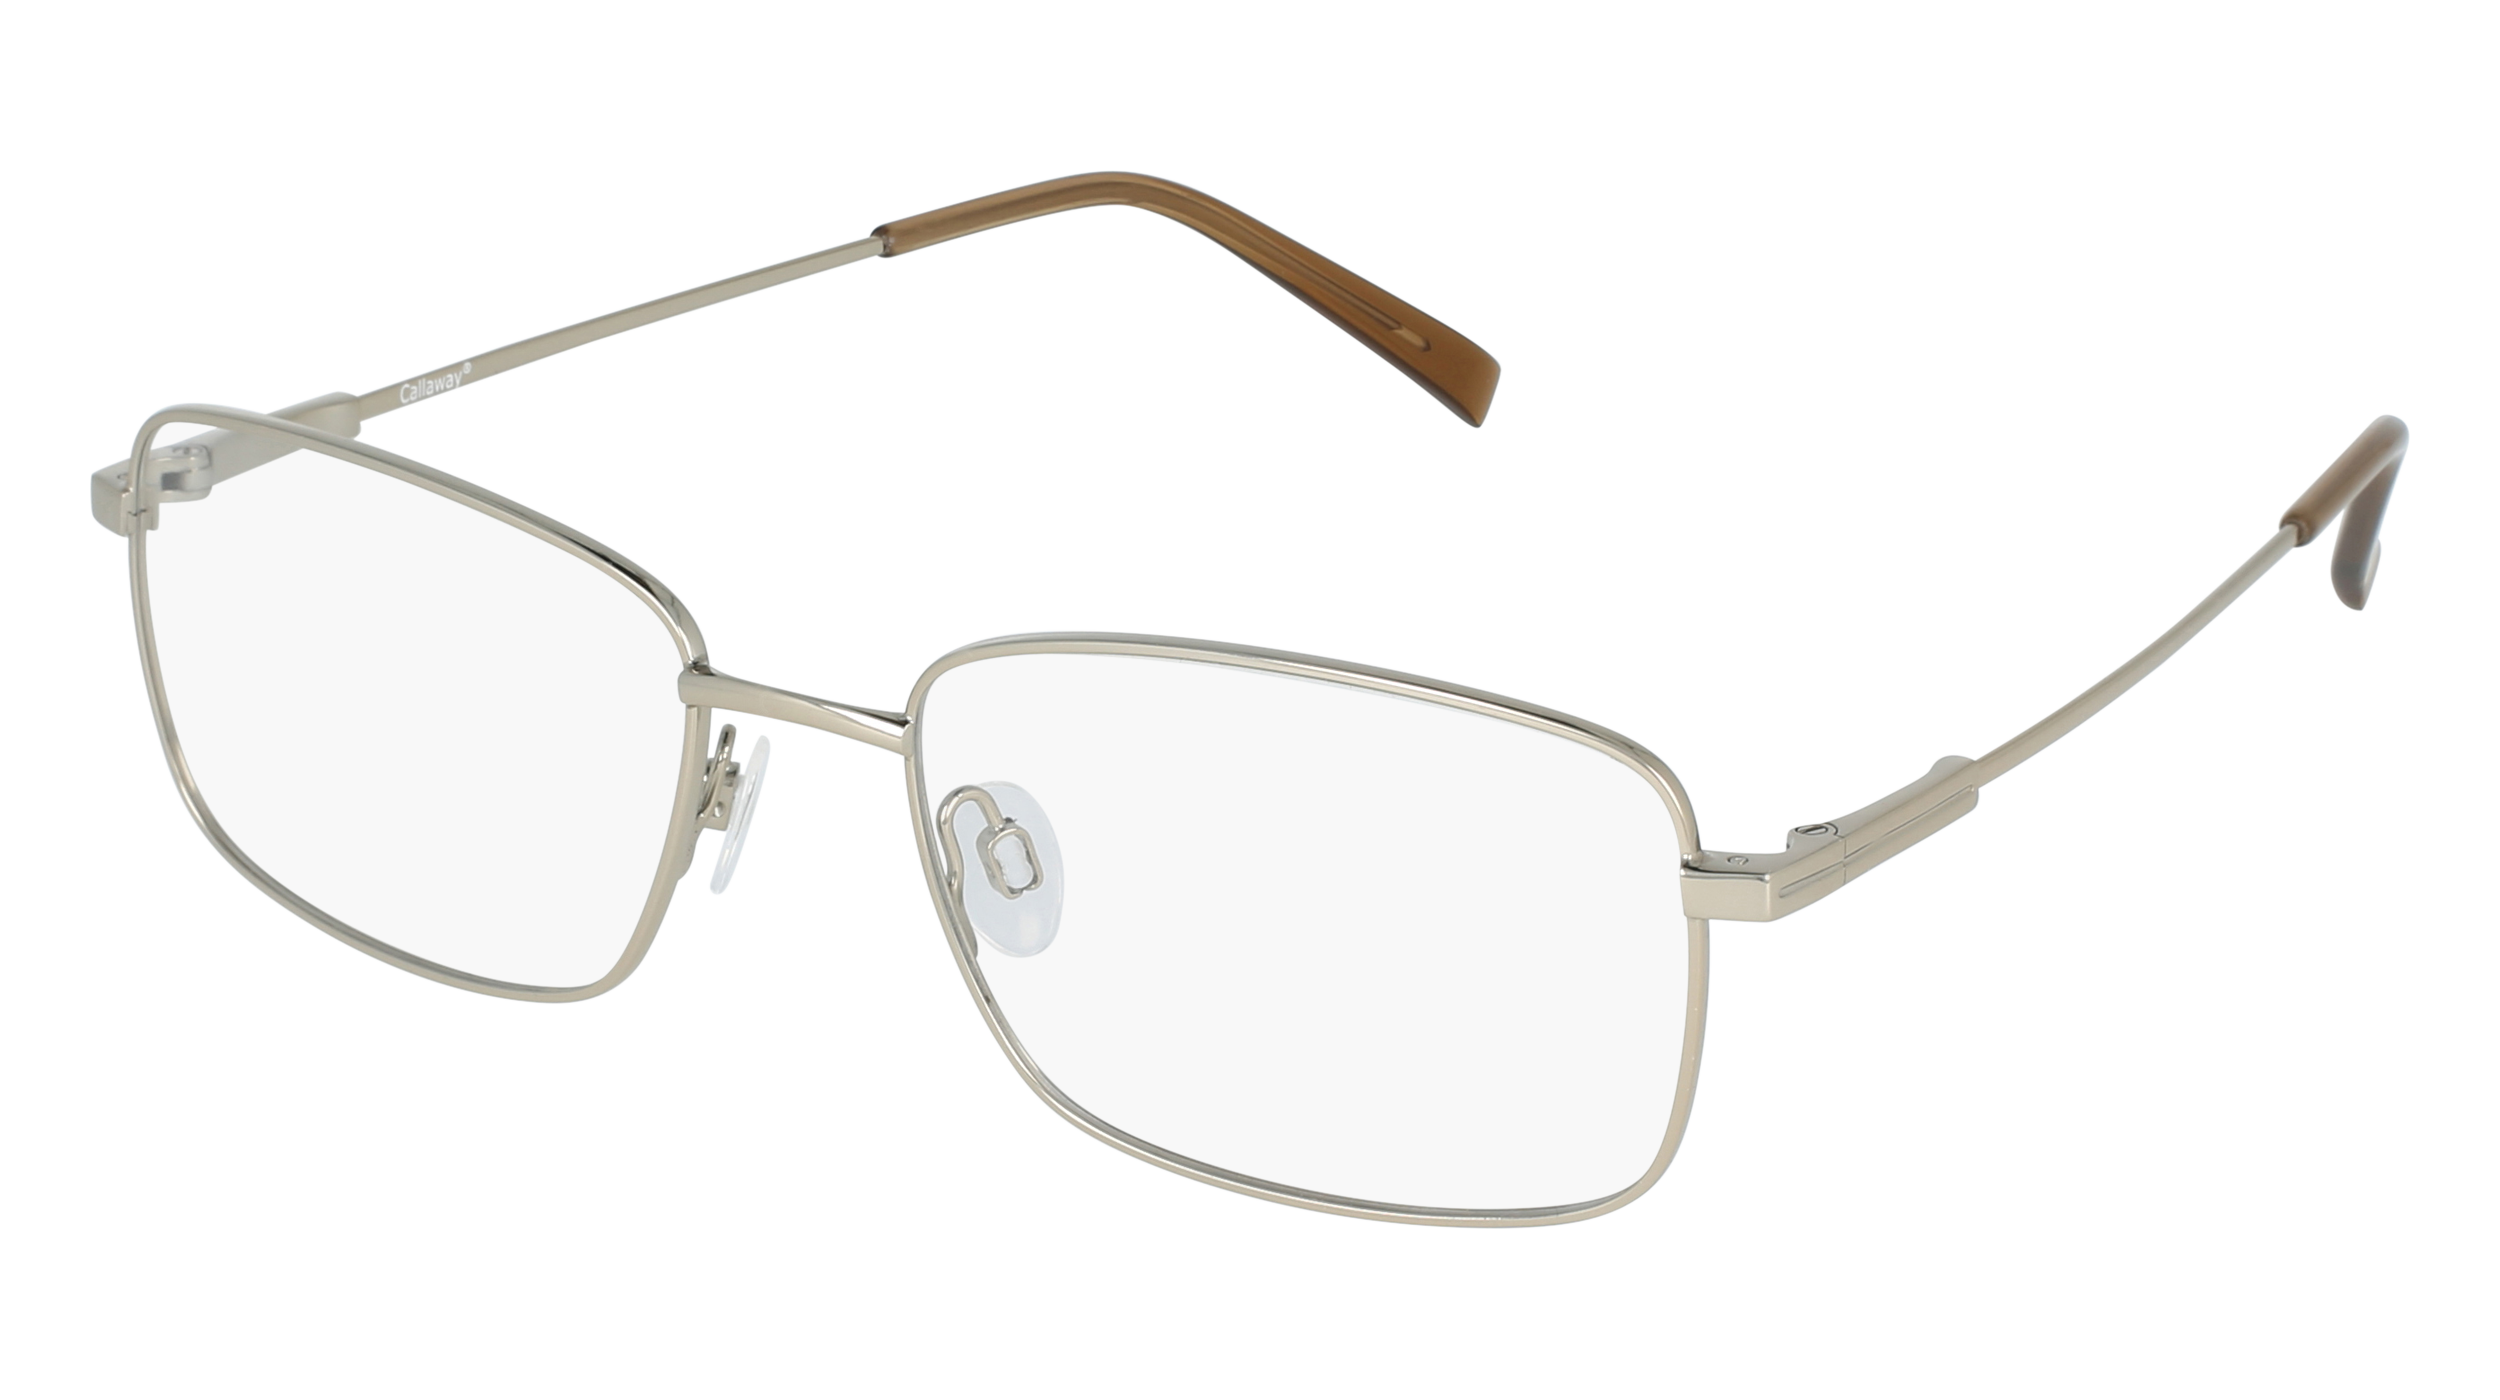 C C 04 men's eyeglasses (from the side)